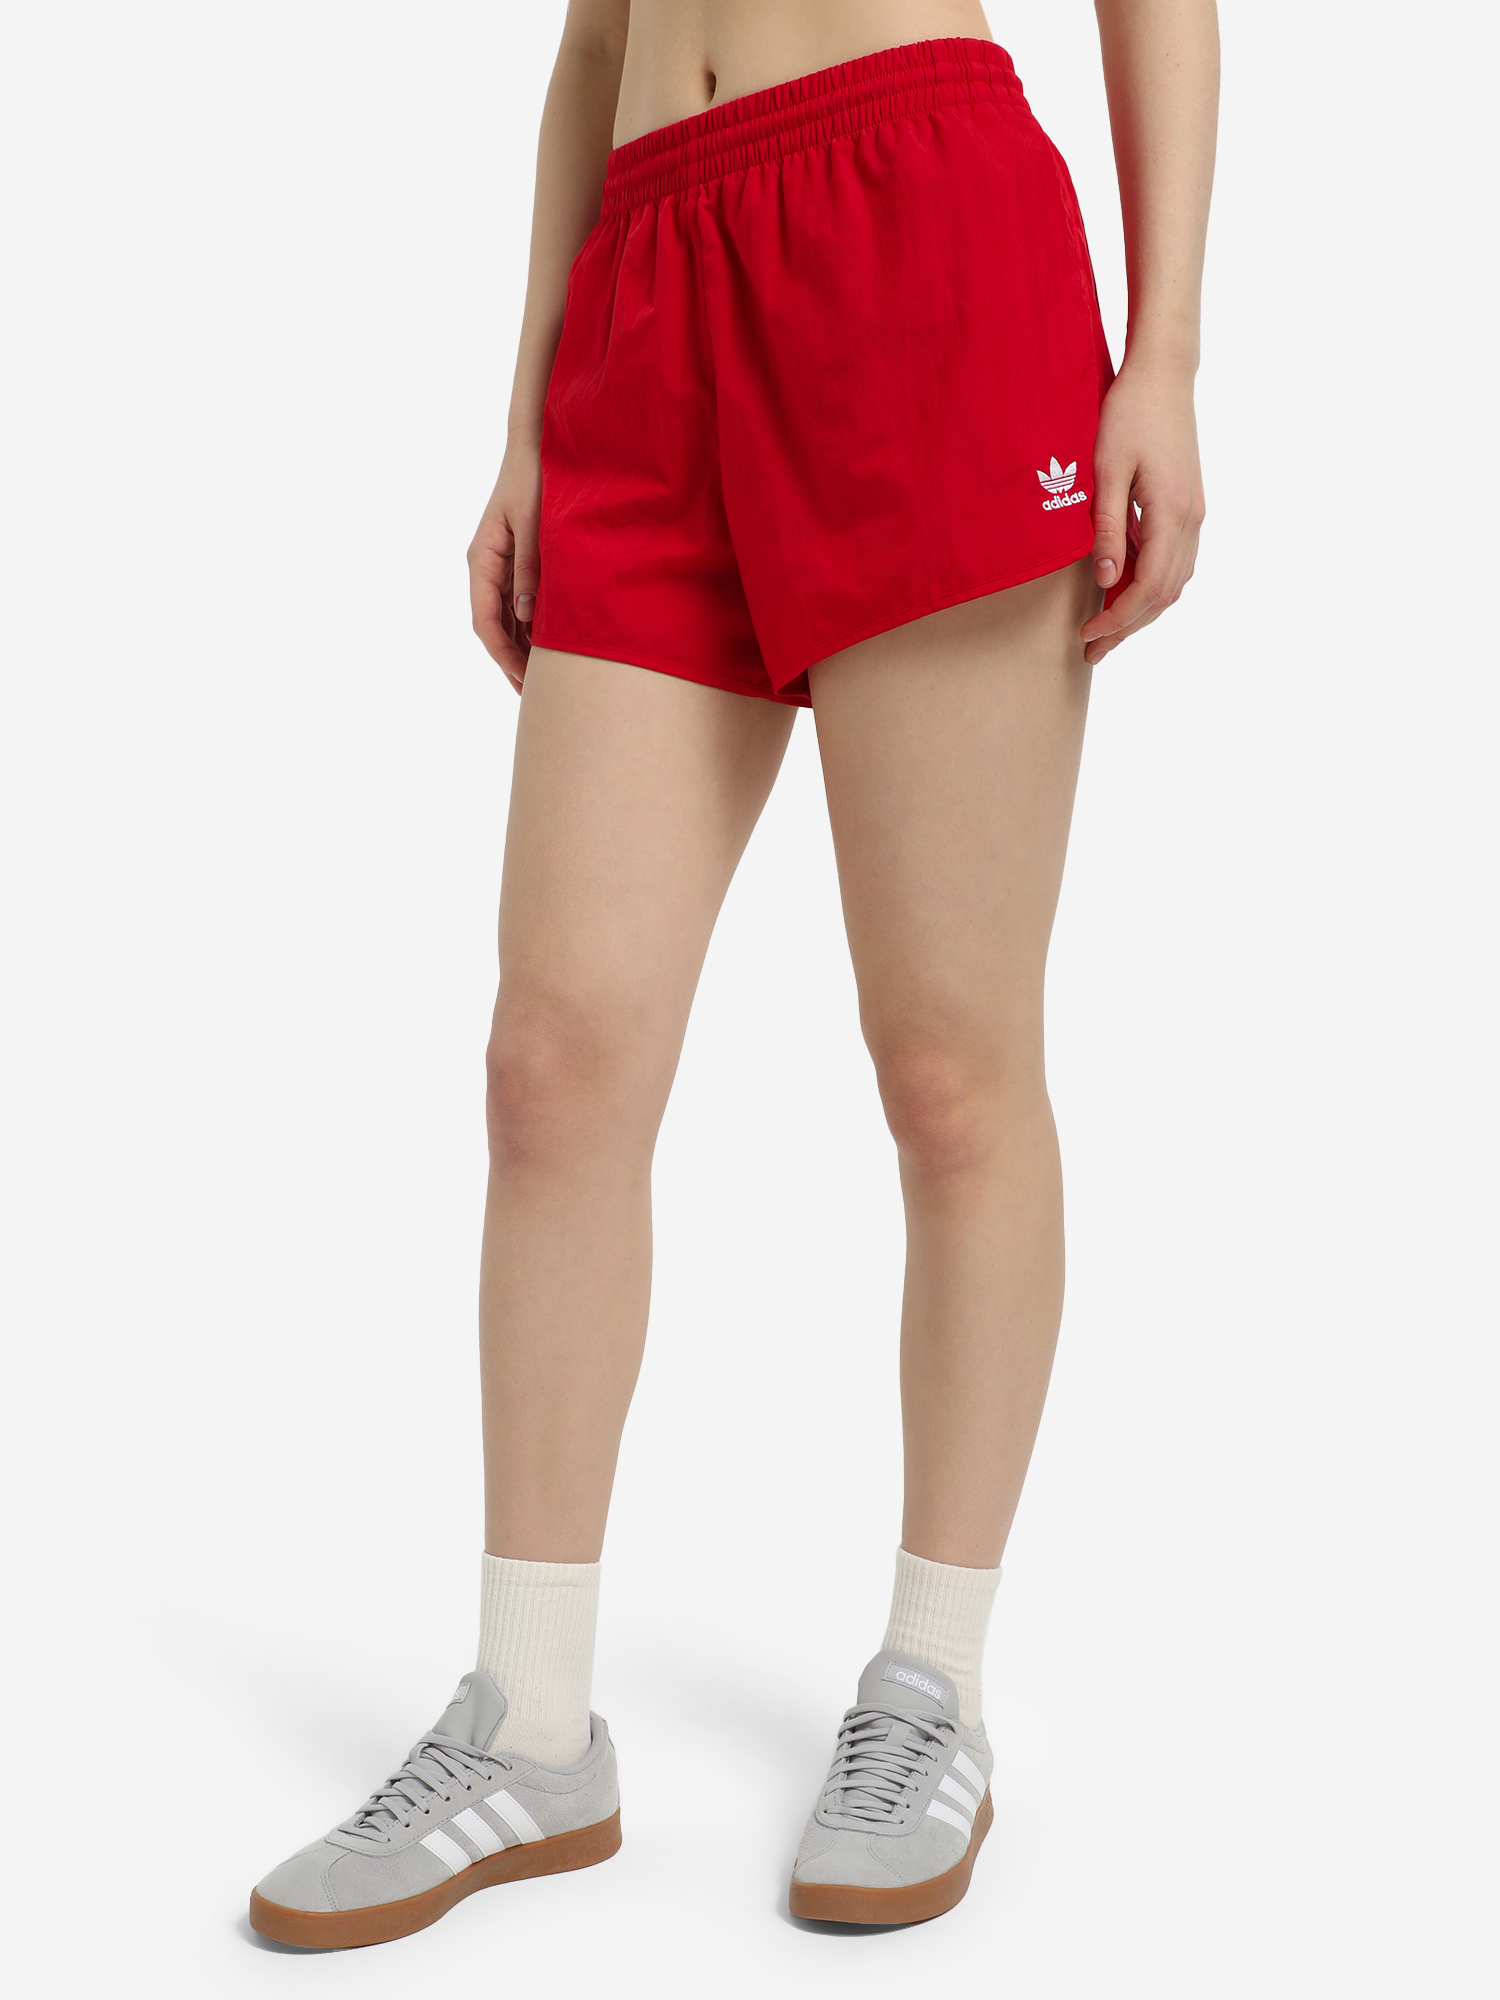 Шорты женские adidas 3-Stripes, Красный шорты боксерские adidas multi boxing shorts красные adismb01